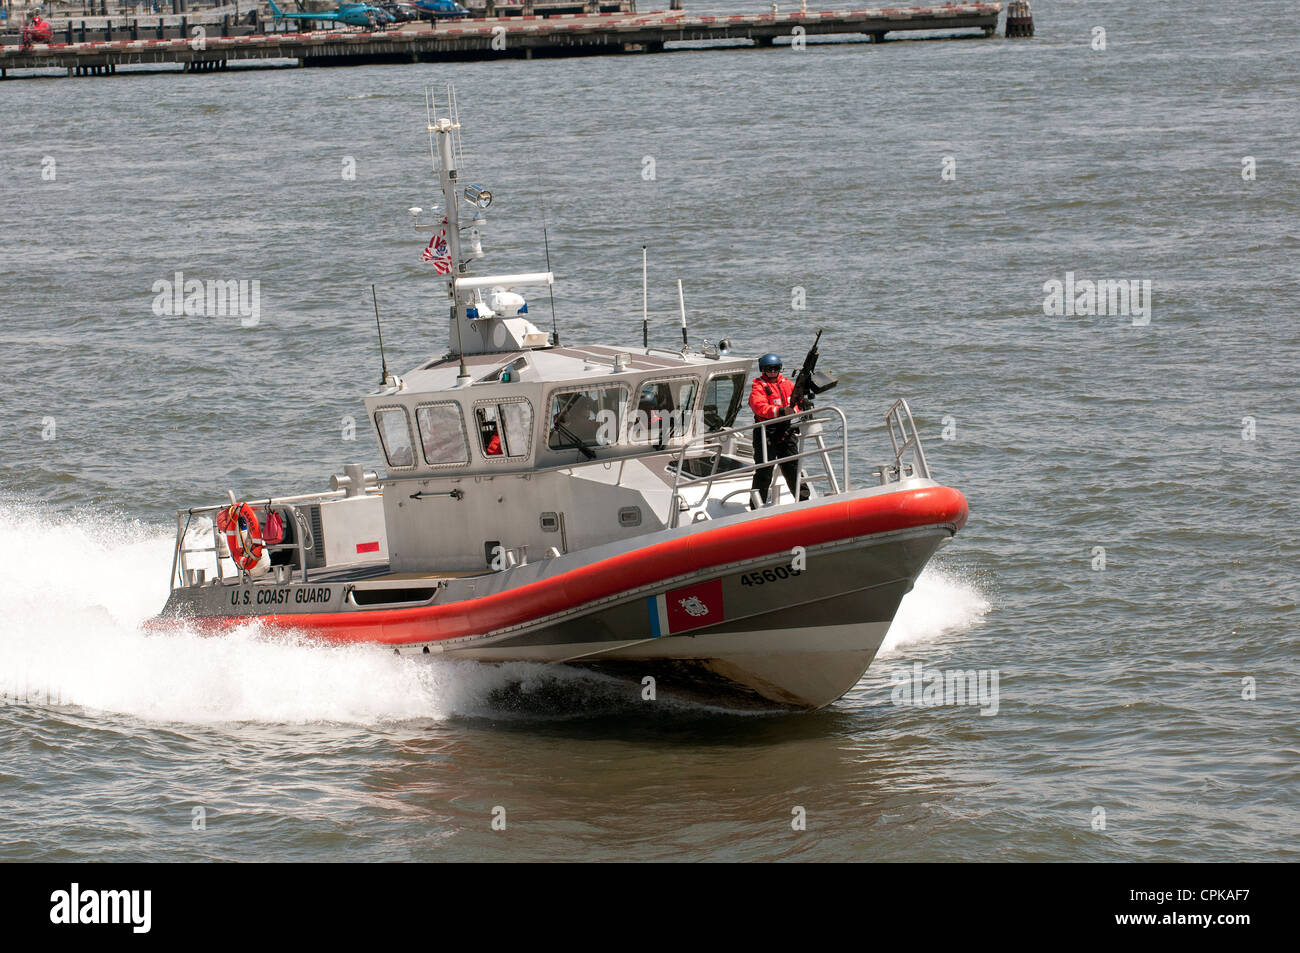 US Coast Guard patrol pattuglia protezione esercizio vaso recipiente in barca in corso NY New York STATI UNITI D'AMERICA Foto Stock